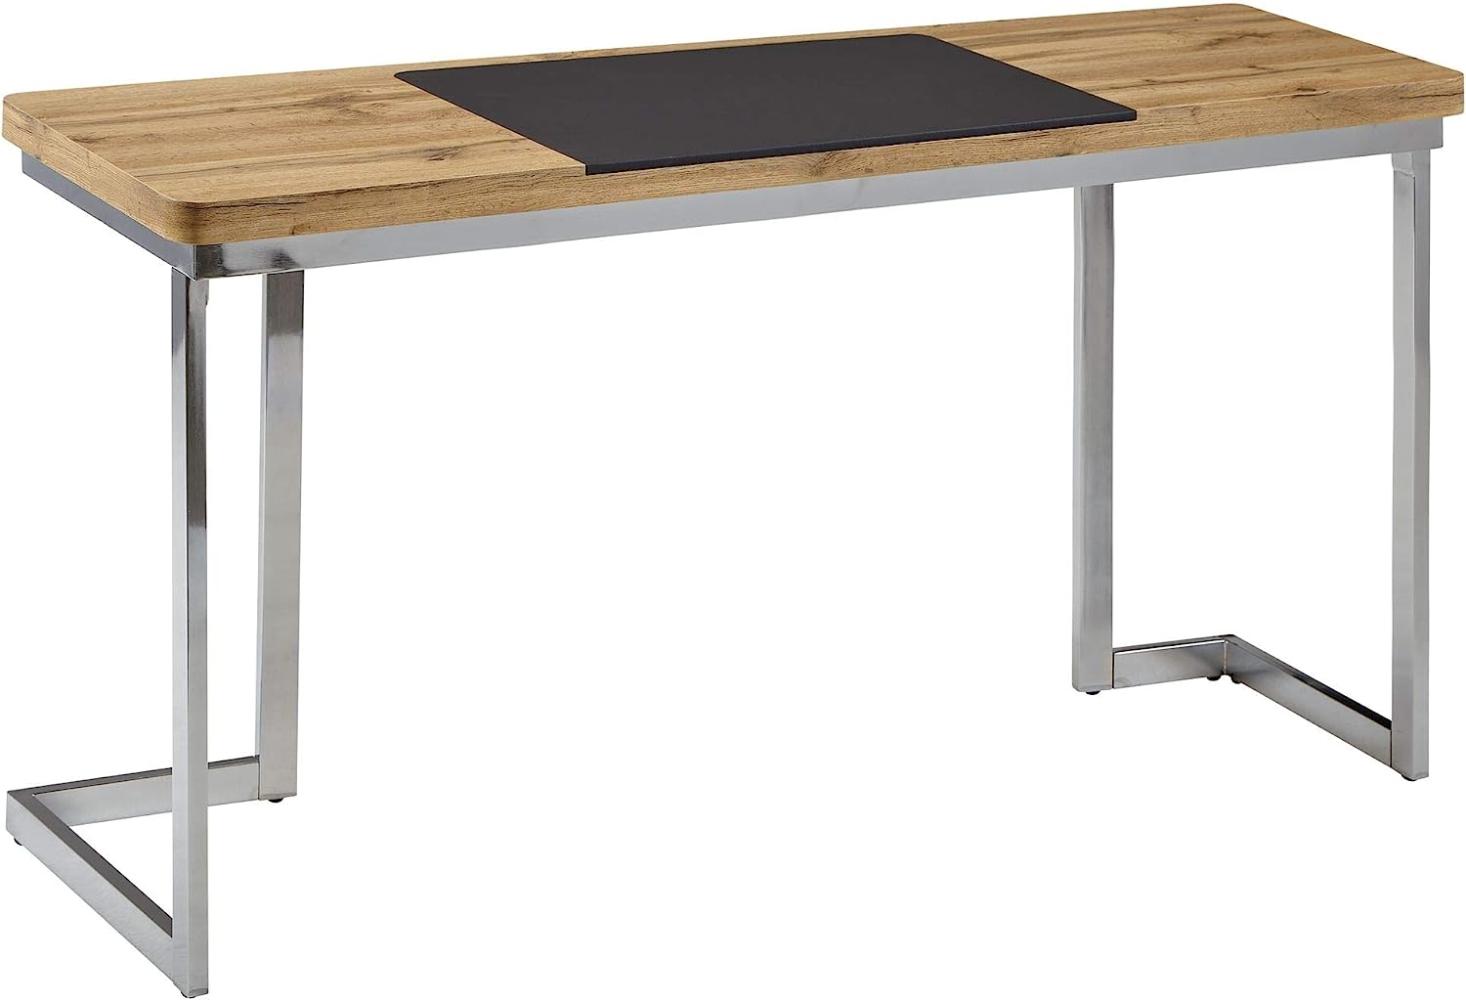 Wohnling Schreibtisch, braun/schwarz/chrom, Holz/Metall, 140x76x55 cm Bild 1